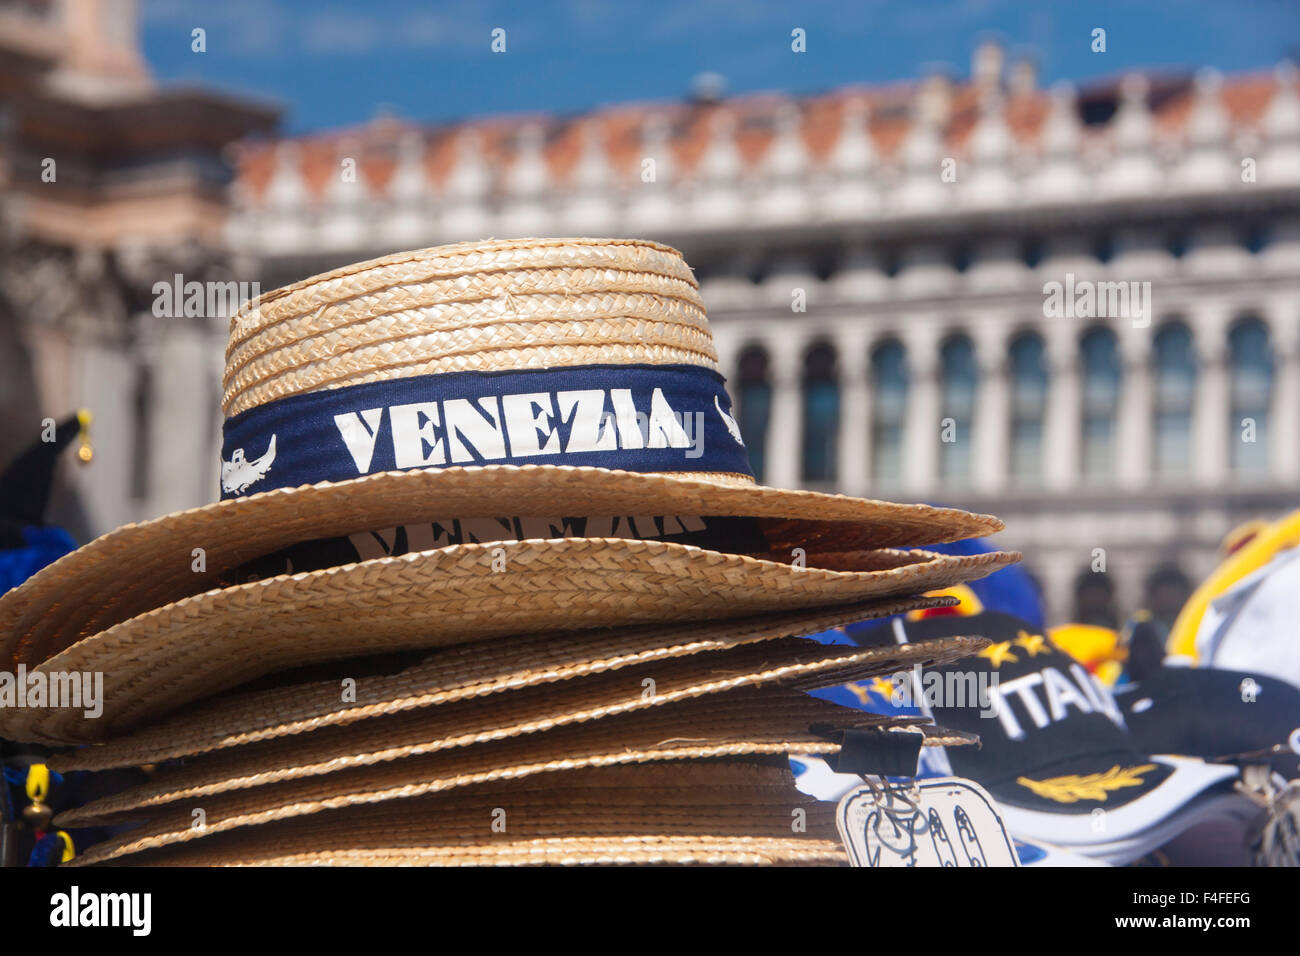 Venice Venezia souvenir straw hats for sale St Mark's Square Piazza San Marco Venice Veneto Italy Stock Photo